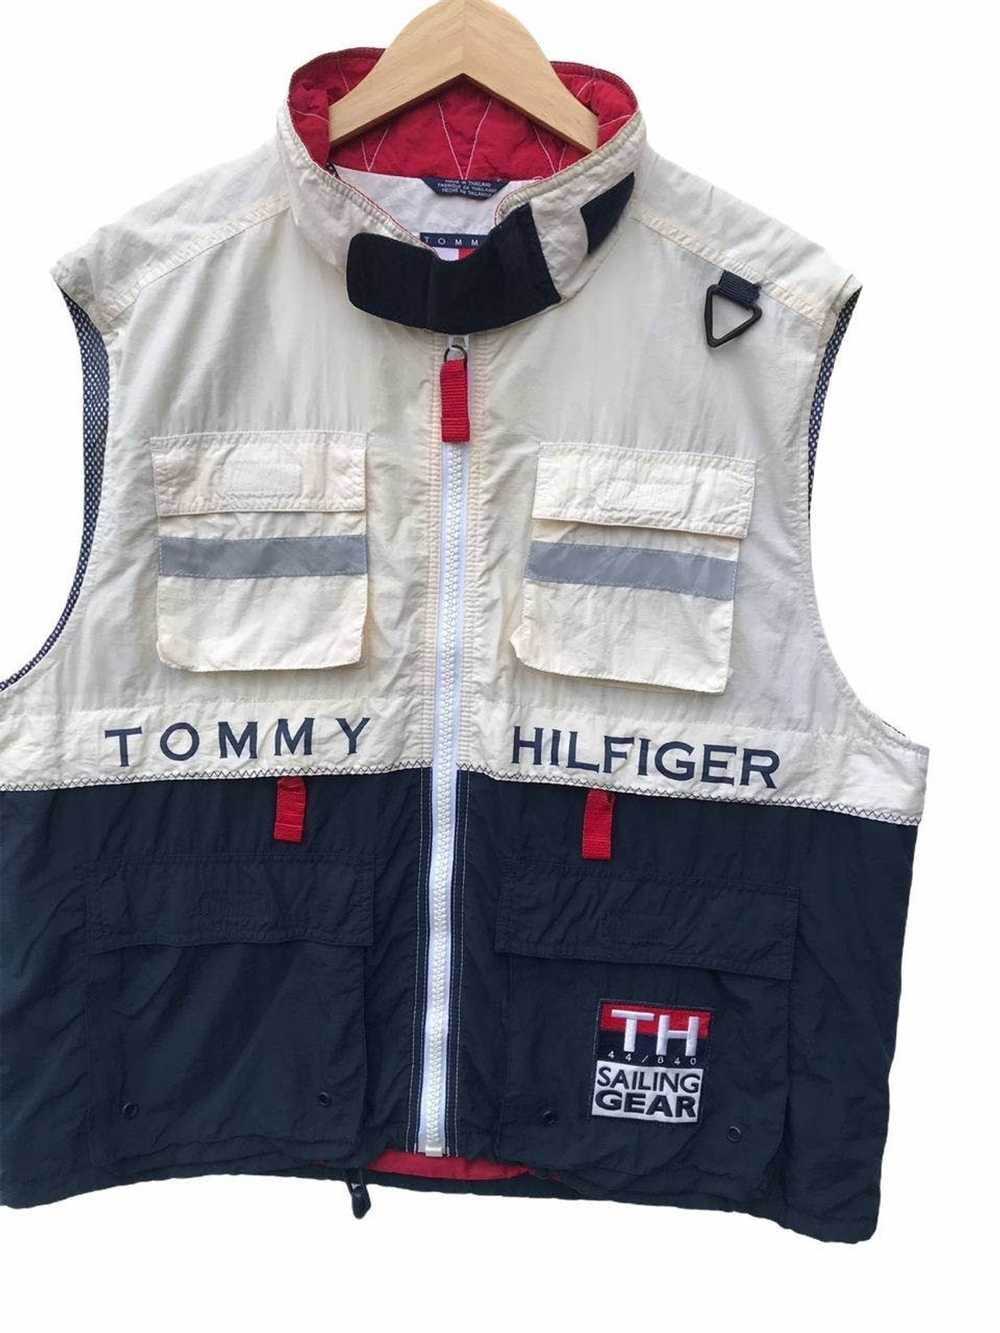 Tommy Hilfiger Tommy Hilfiger Sailing Gear Vest - image 5